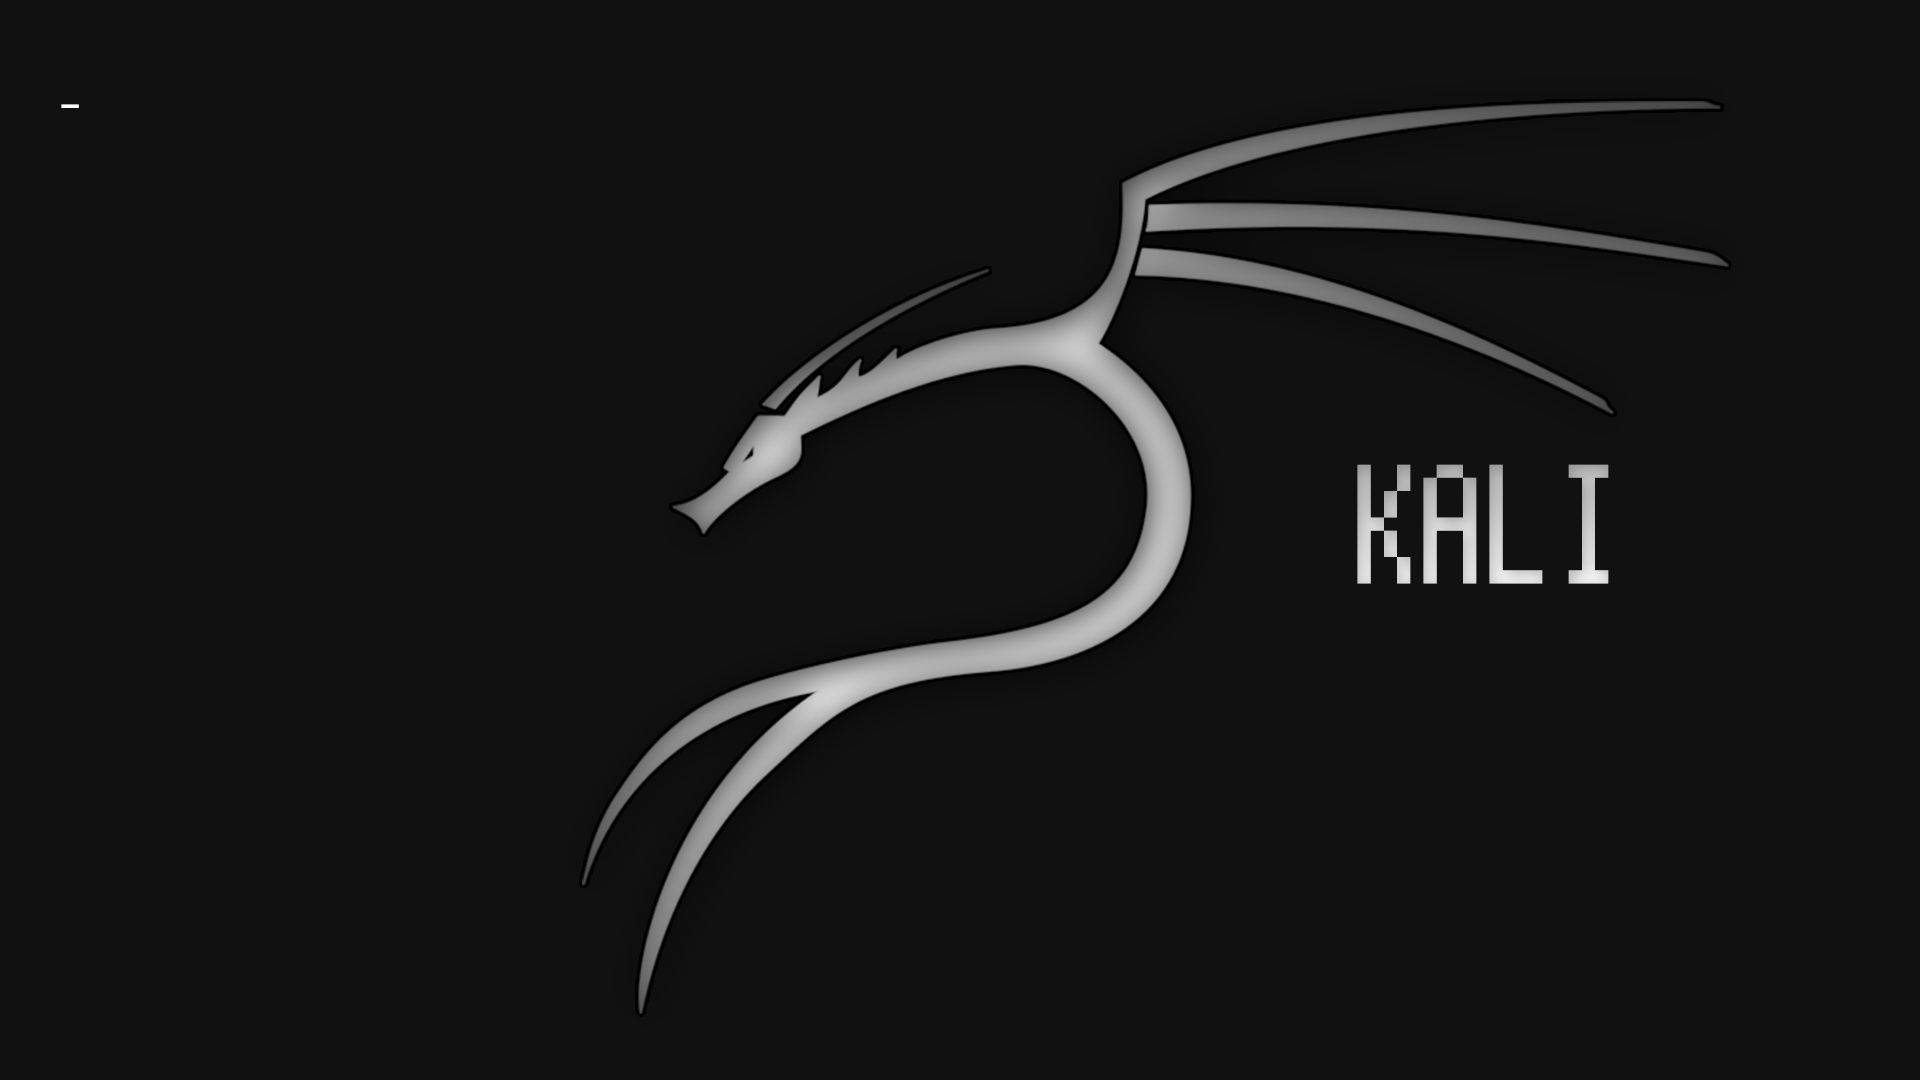 Black & White Kali Linux Wallpaper